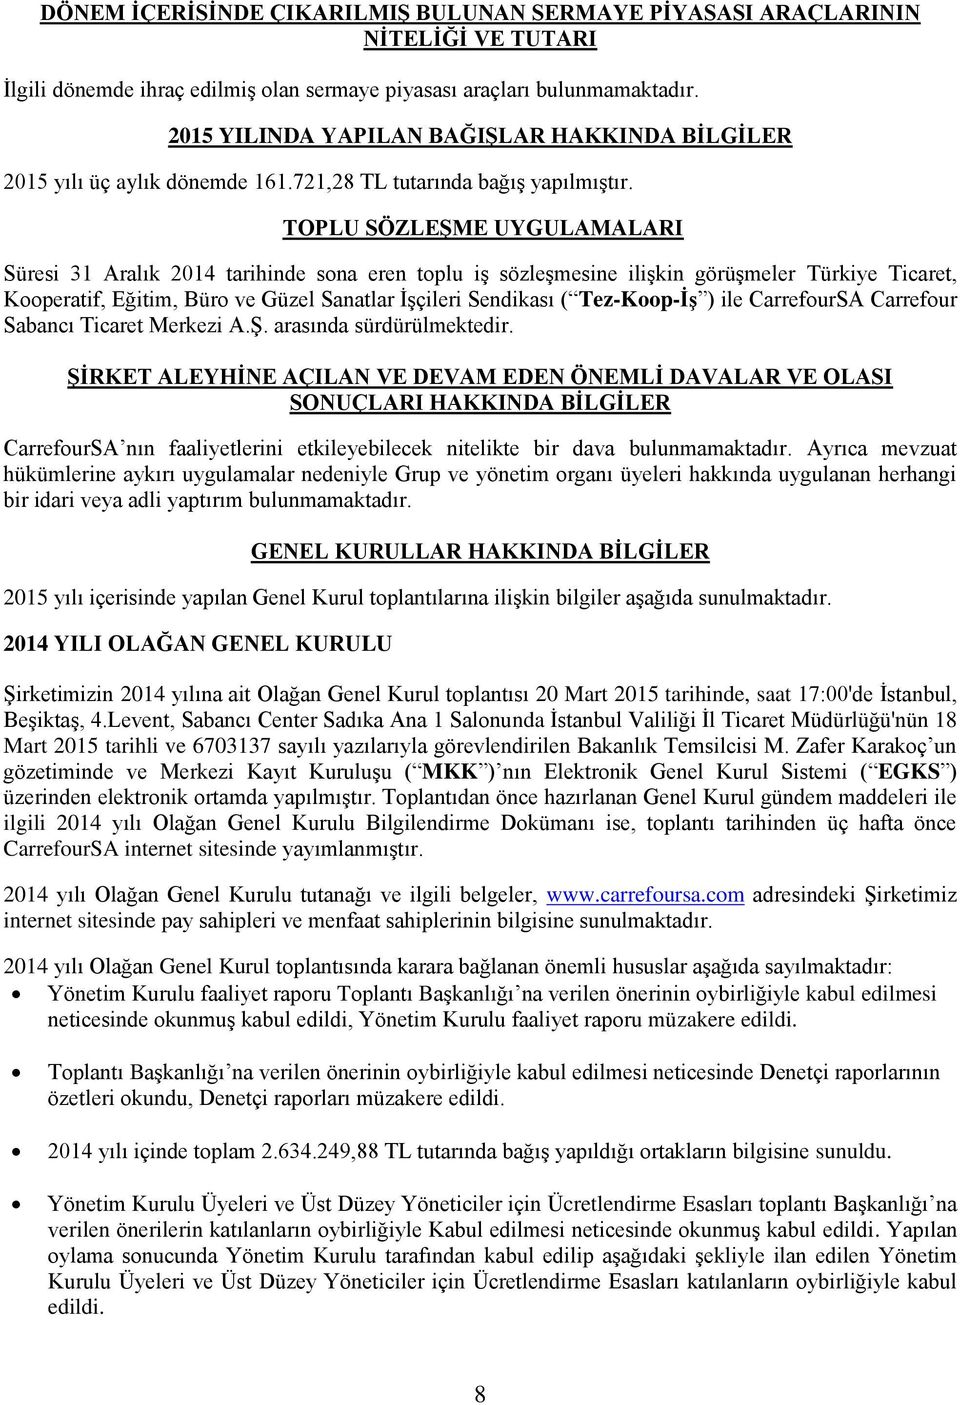 TOPLU SÖZLEŞME UYGULAMALARI Süresi 31 Aralık 2014 tarihinde sona eren toplu iş sözleşmesine ilişkin görüşmeler Türkiye Ticaret, Kooperatif, Eğitim, Büro ve Güzel Sanatlar İşçileri Sendikası (